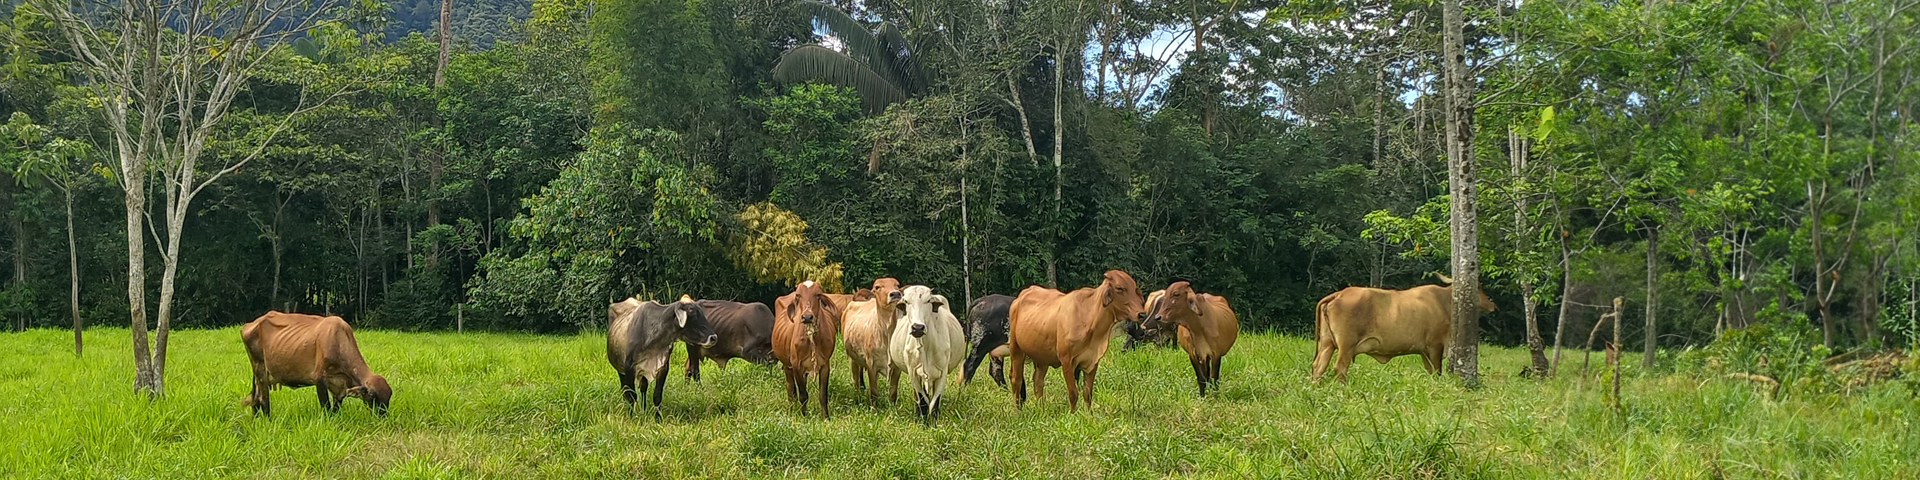 Rinder grasen auf einer grünen Weide an einem angrenzenden Wald.